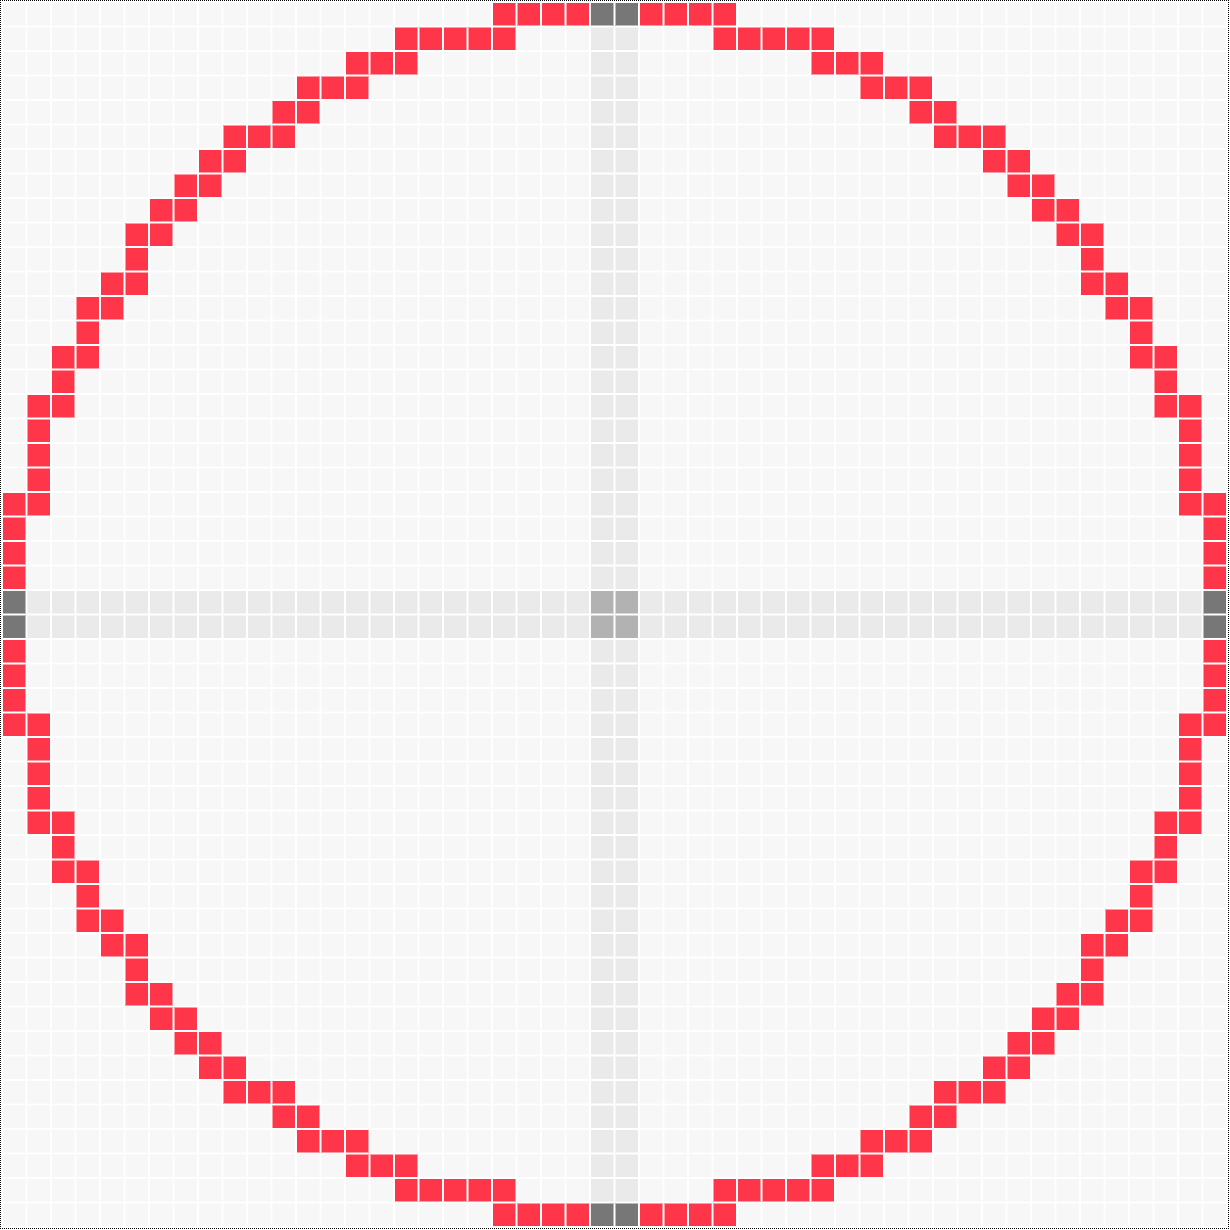 Pixel circle generator